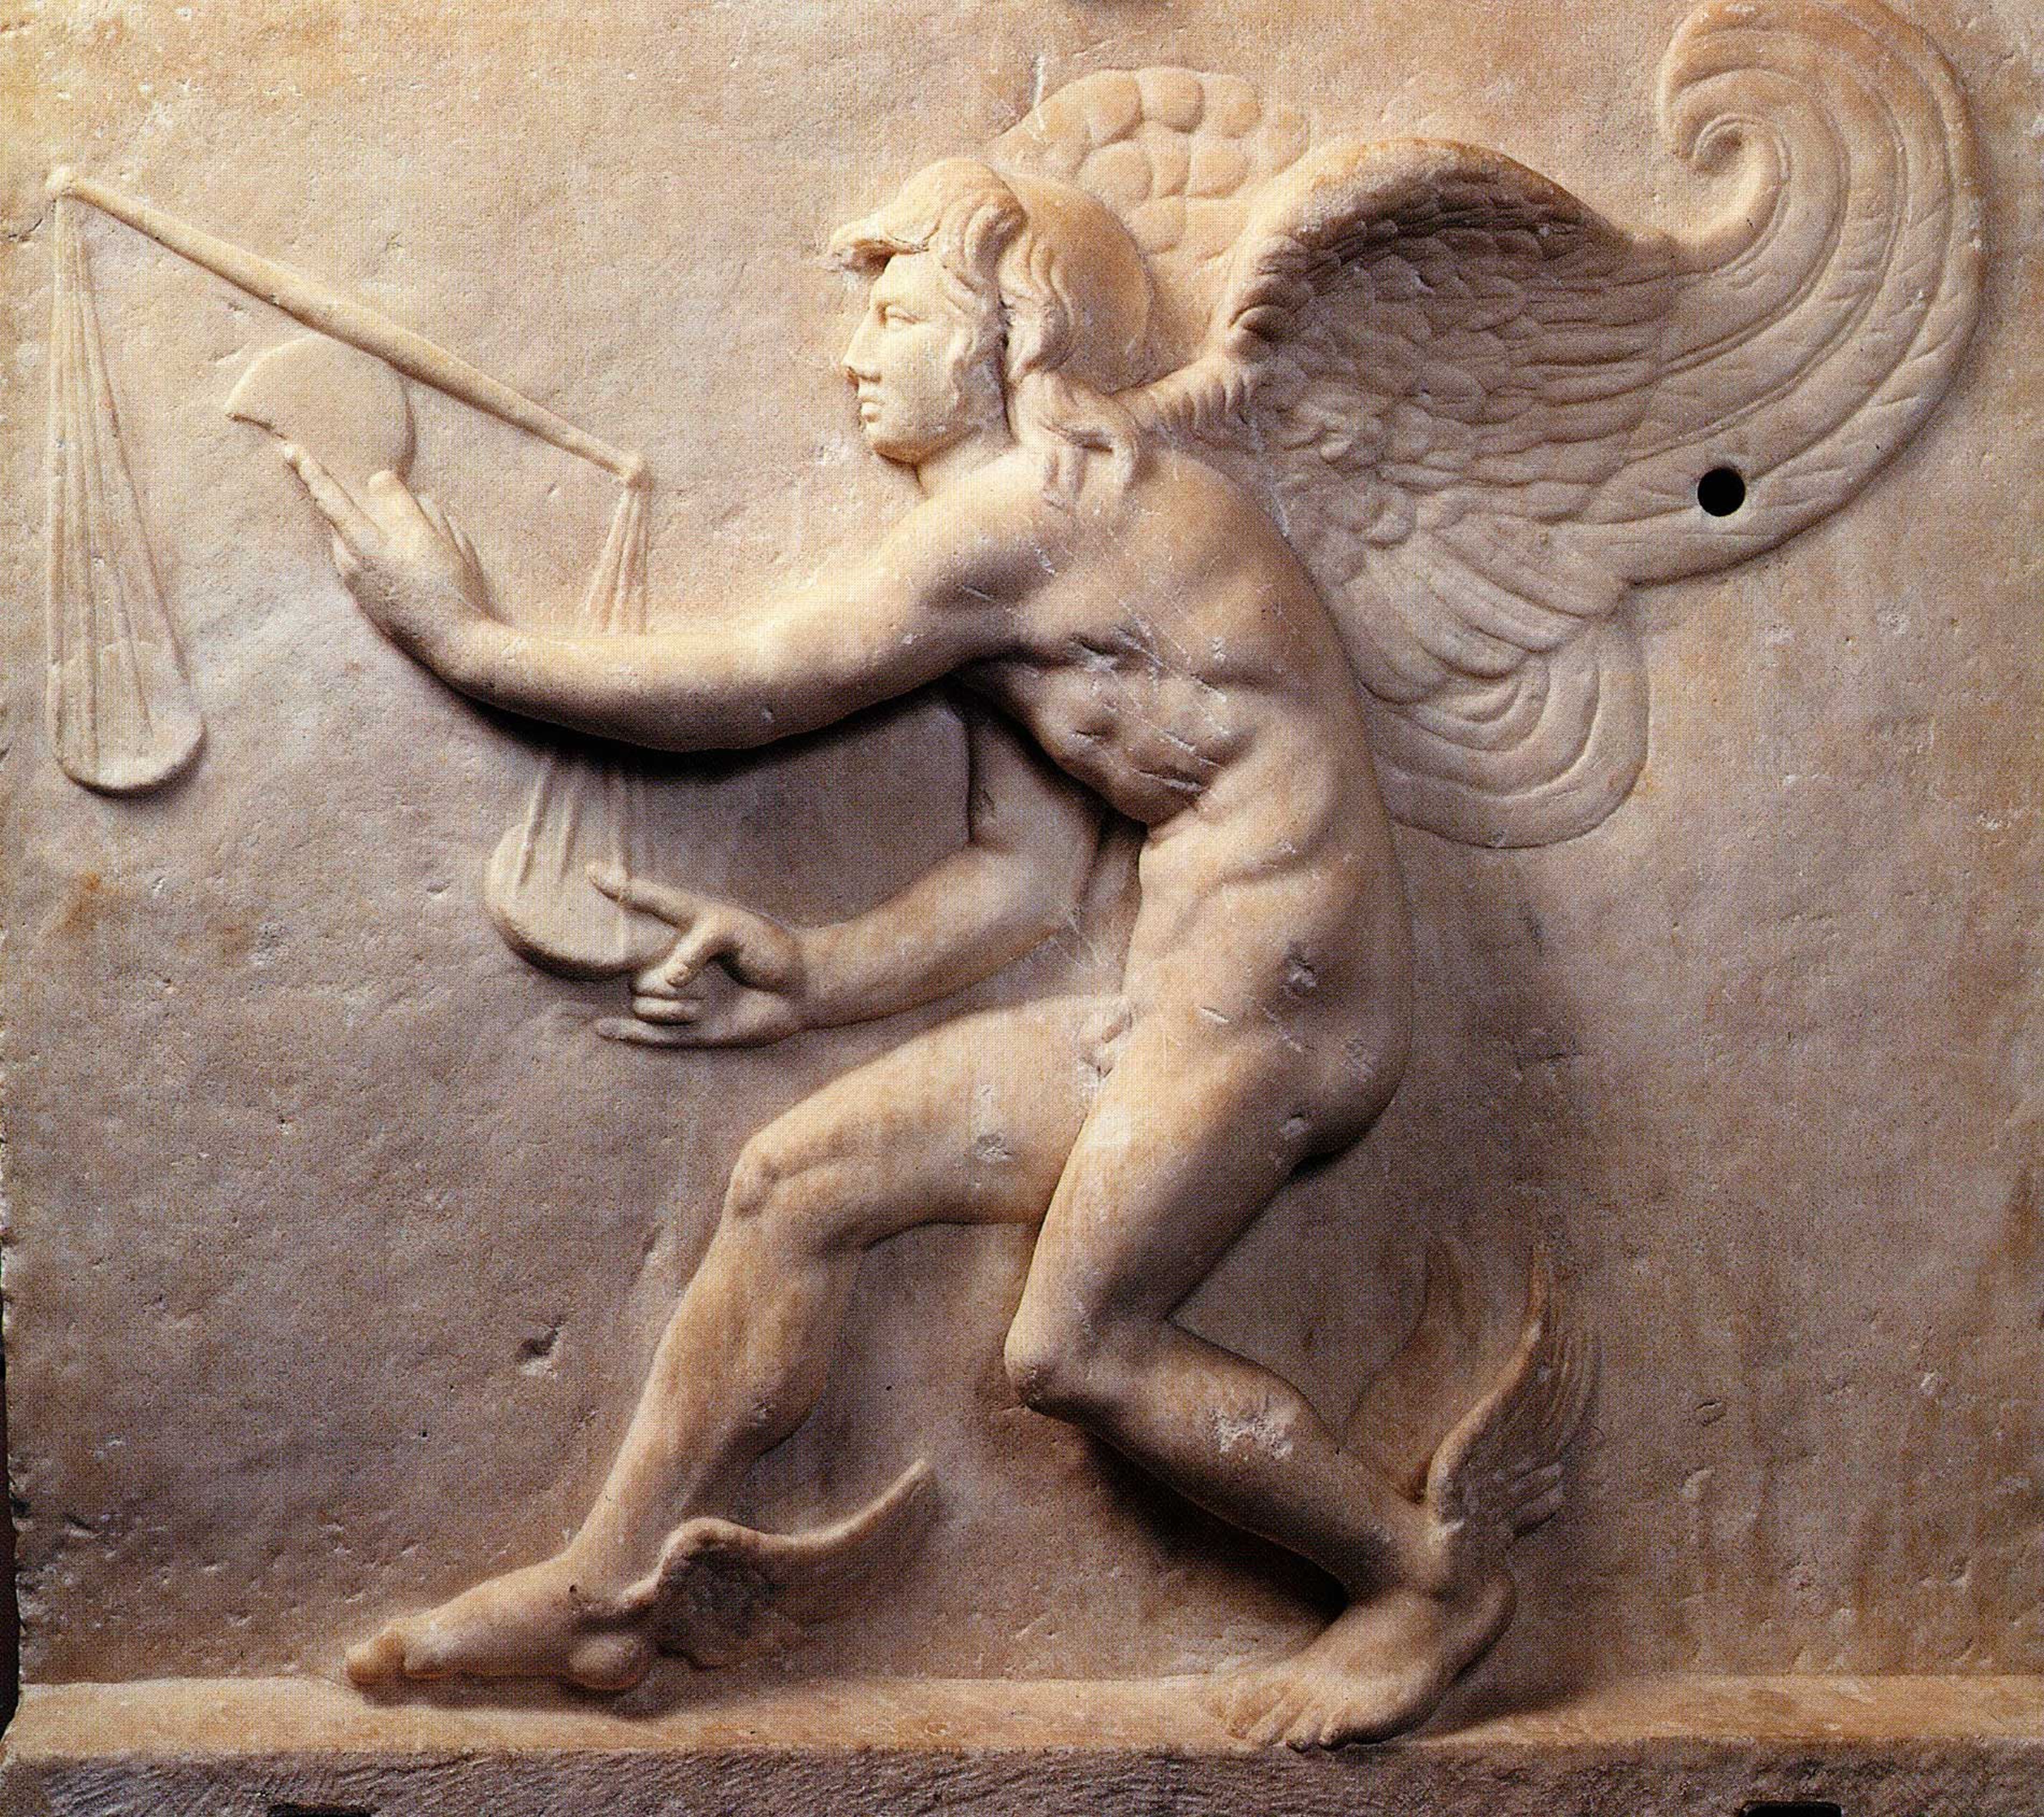 Kairos relief following the Lysippus model, second century B.C.E., Turin, Museo di Arte Greco-Romana